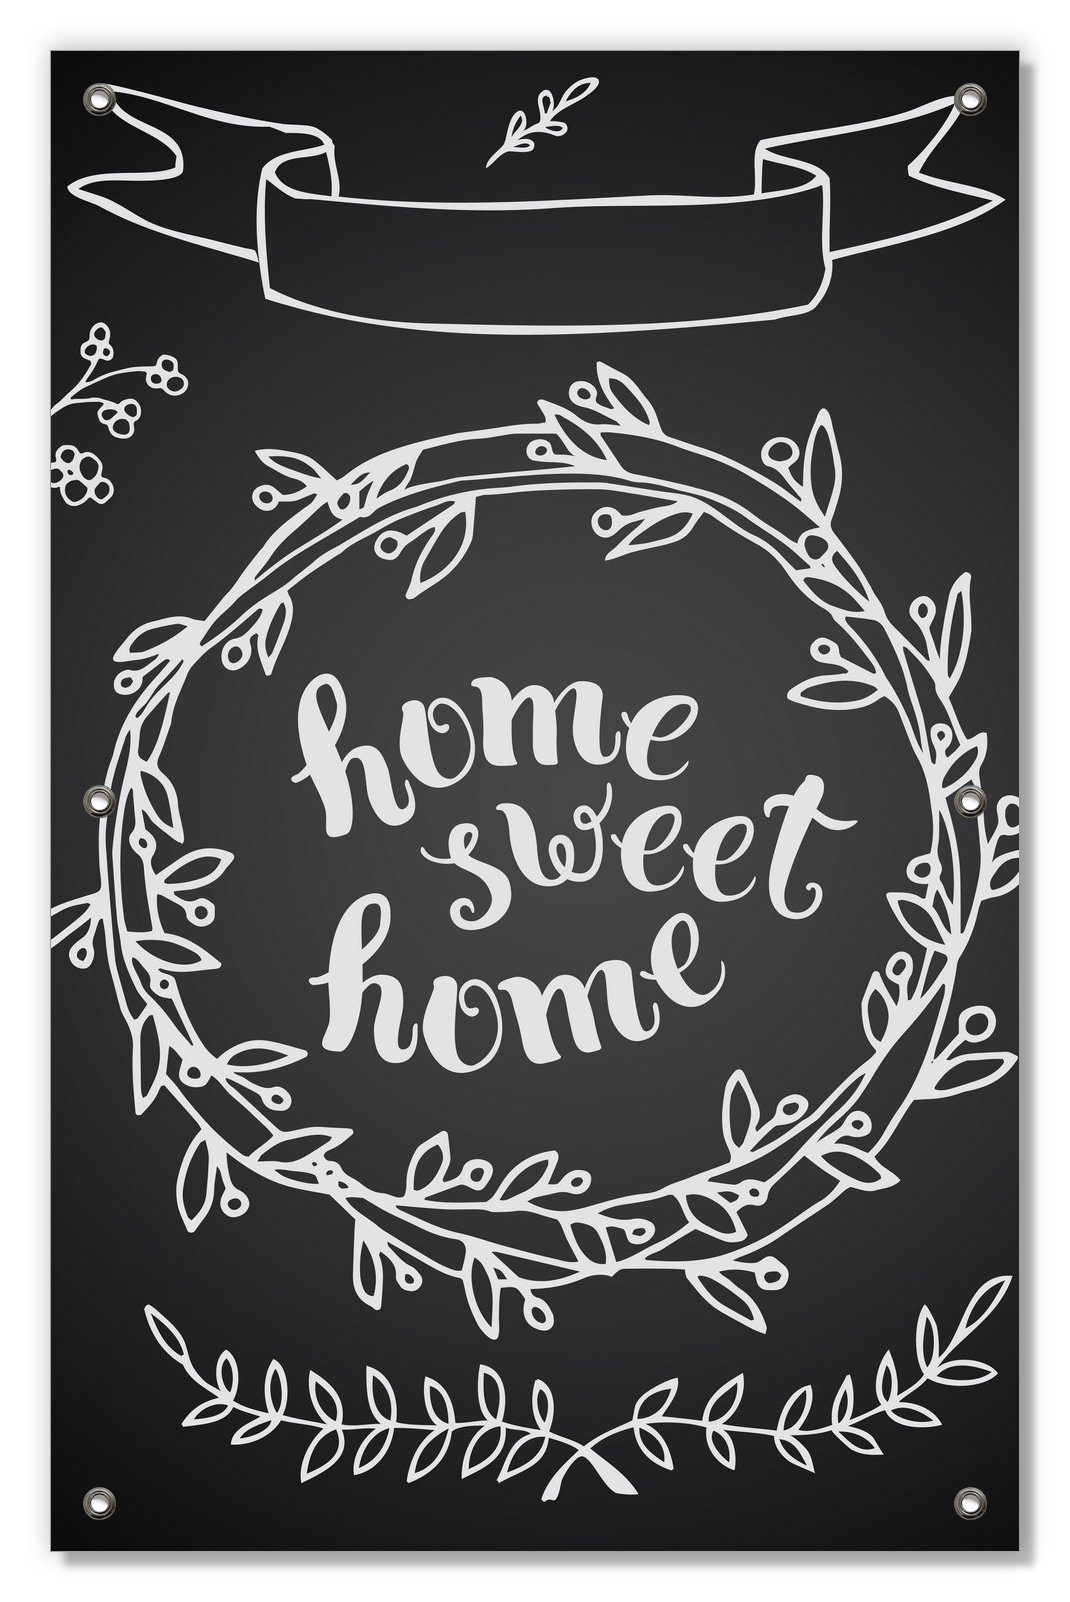 Sonnenschutz Home sweet Home  Weiß auf Schwarz, Wallario, blickdicht, mit Saugnäpfen, wiederablösbar und wiederverwendbar